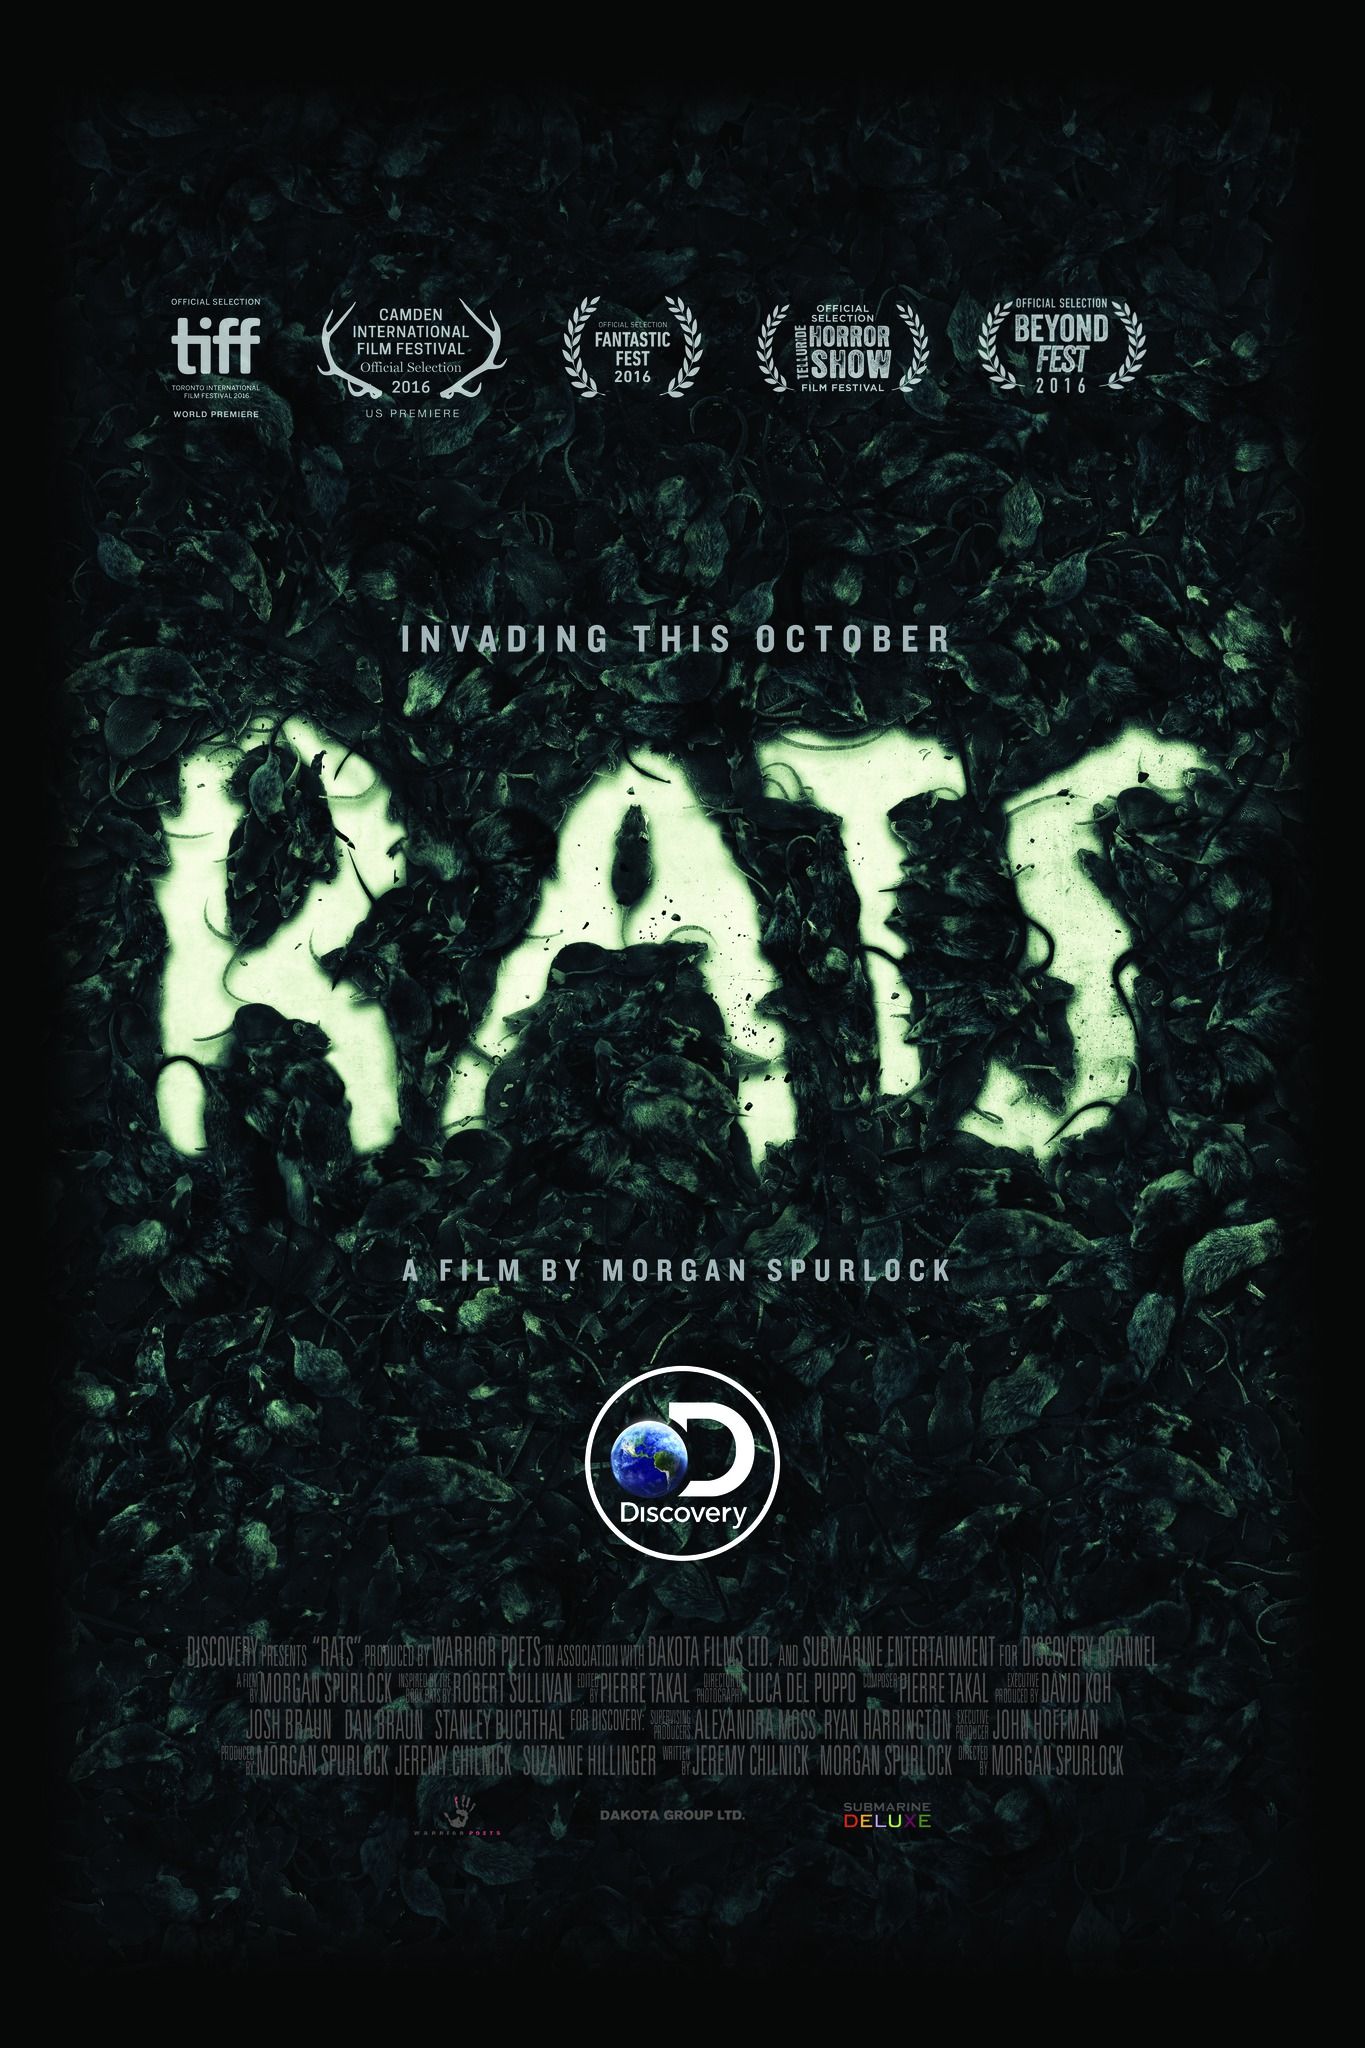 Rats Poster